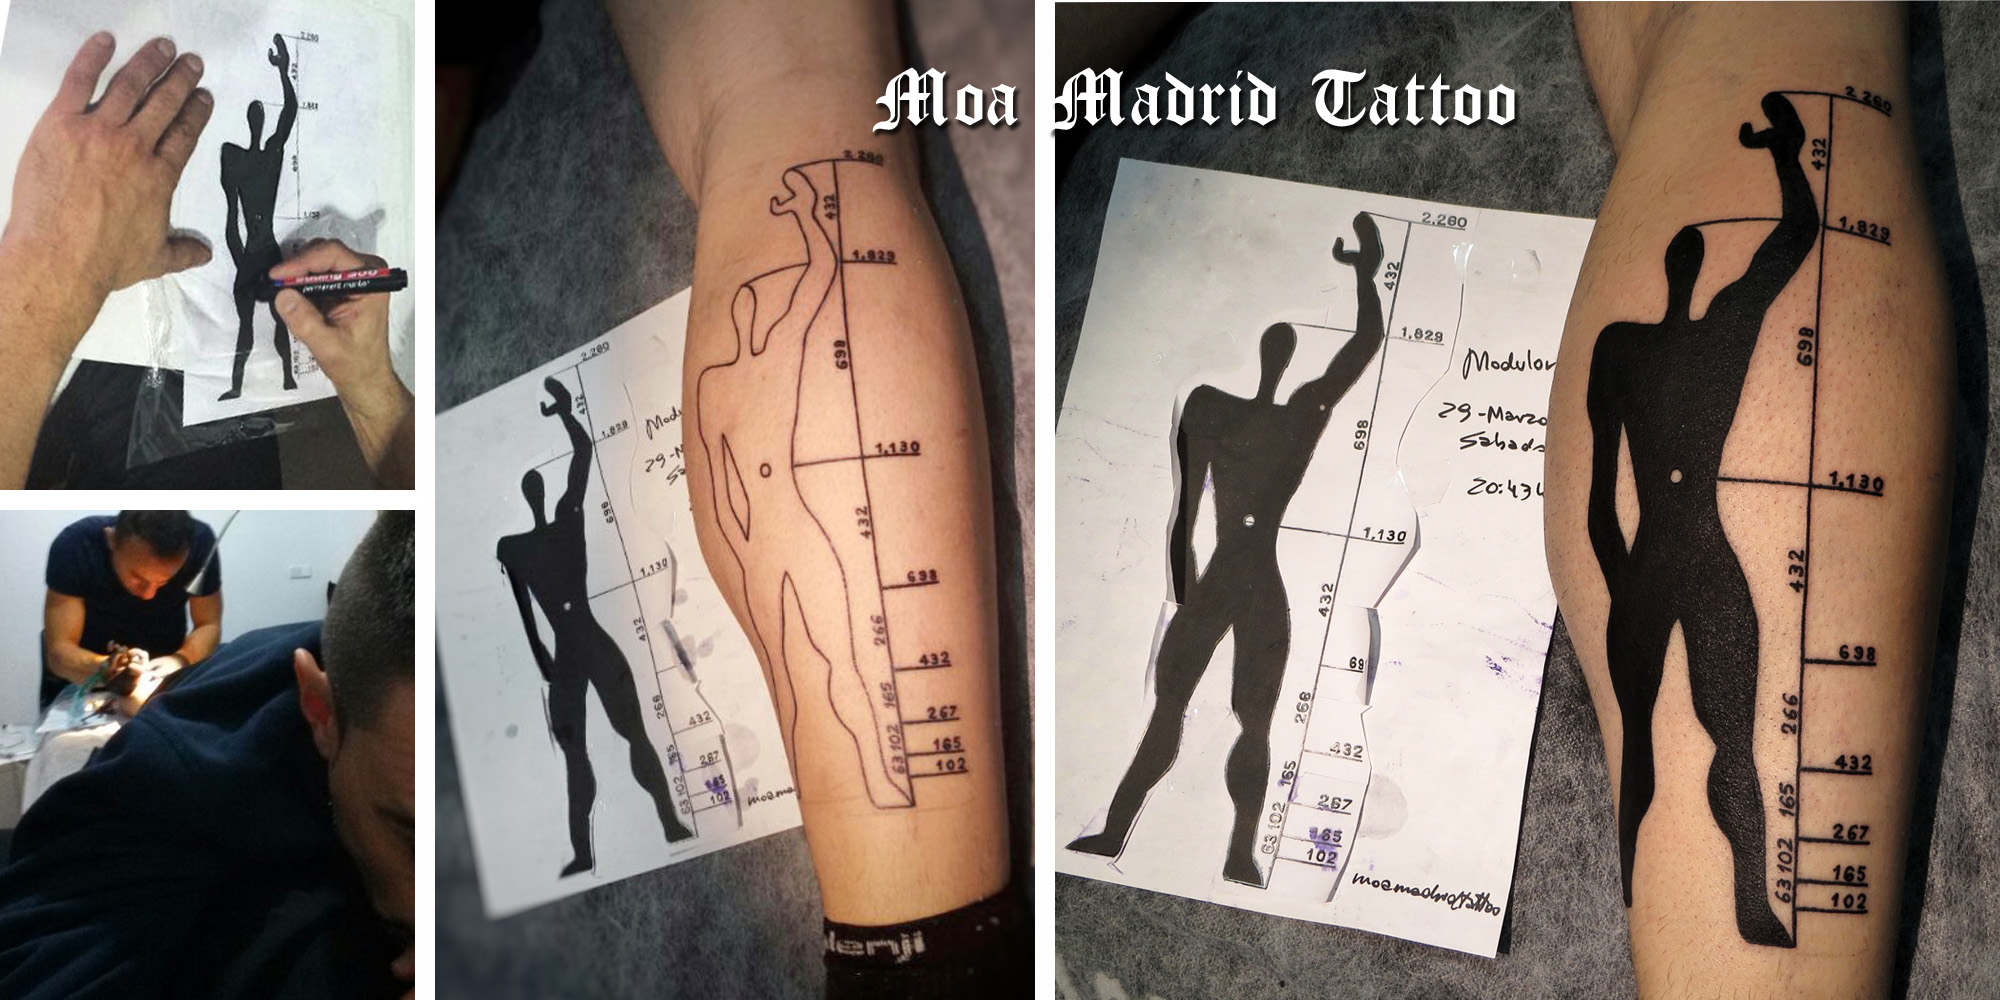 115_opiniones_sobre_moa_madrid_tattoo_tatuaje_arquitectura_le_modulor_le_corbusier